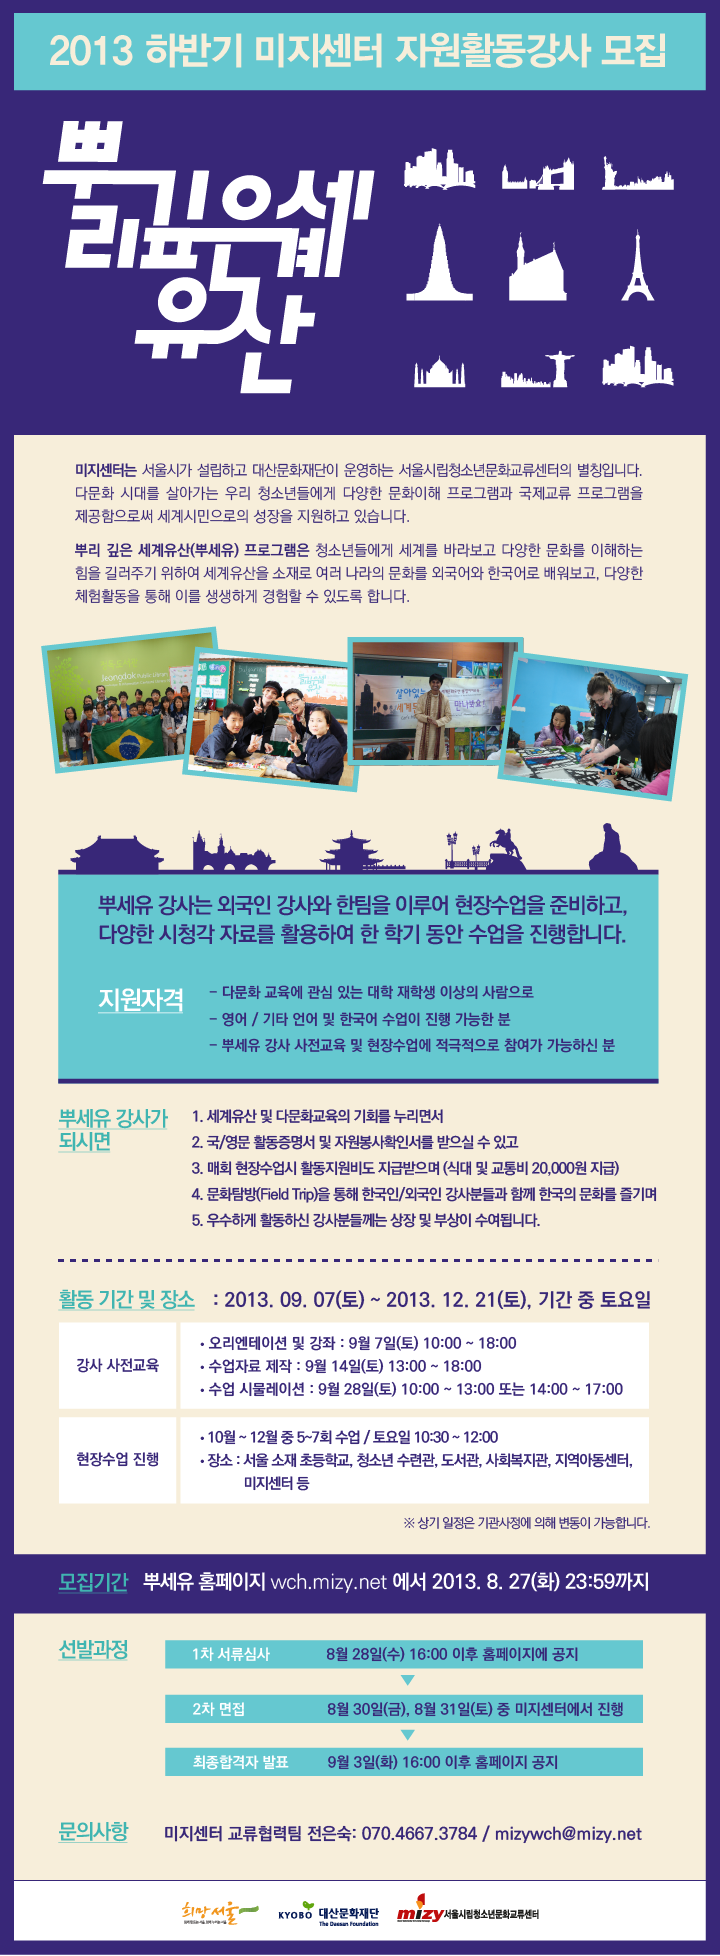 사본 -2013-2 DRWH_instructor recruitment_kor.png